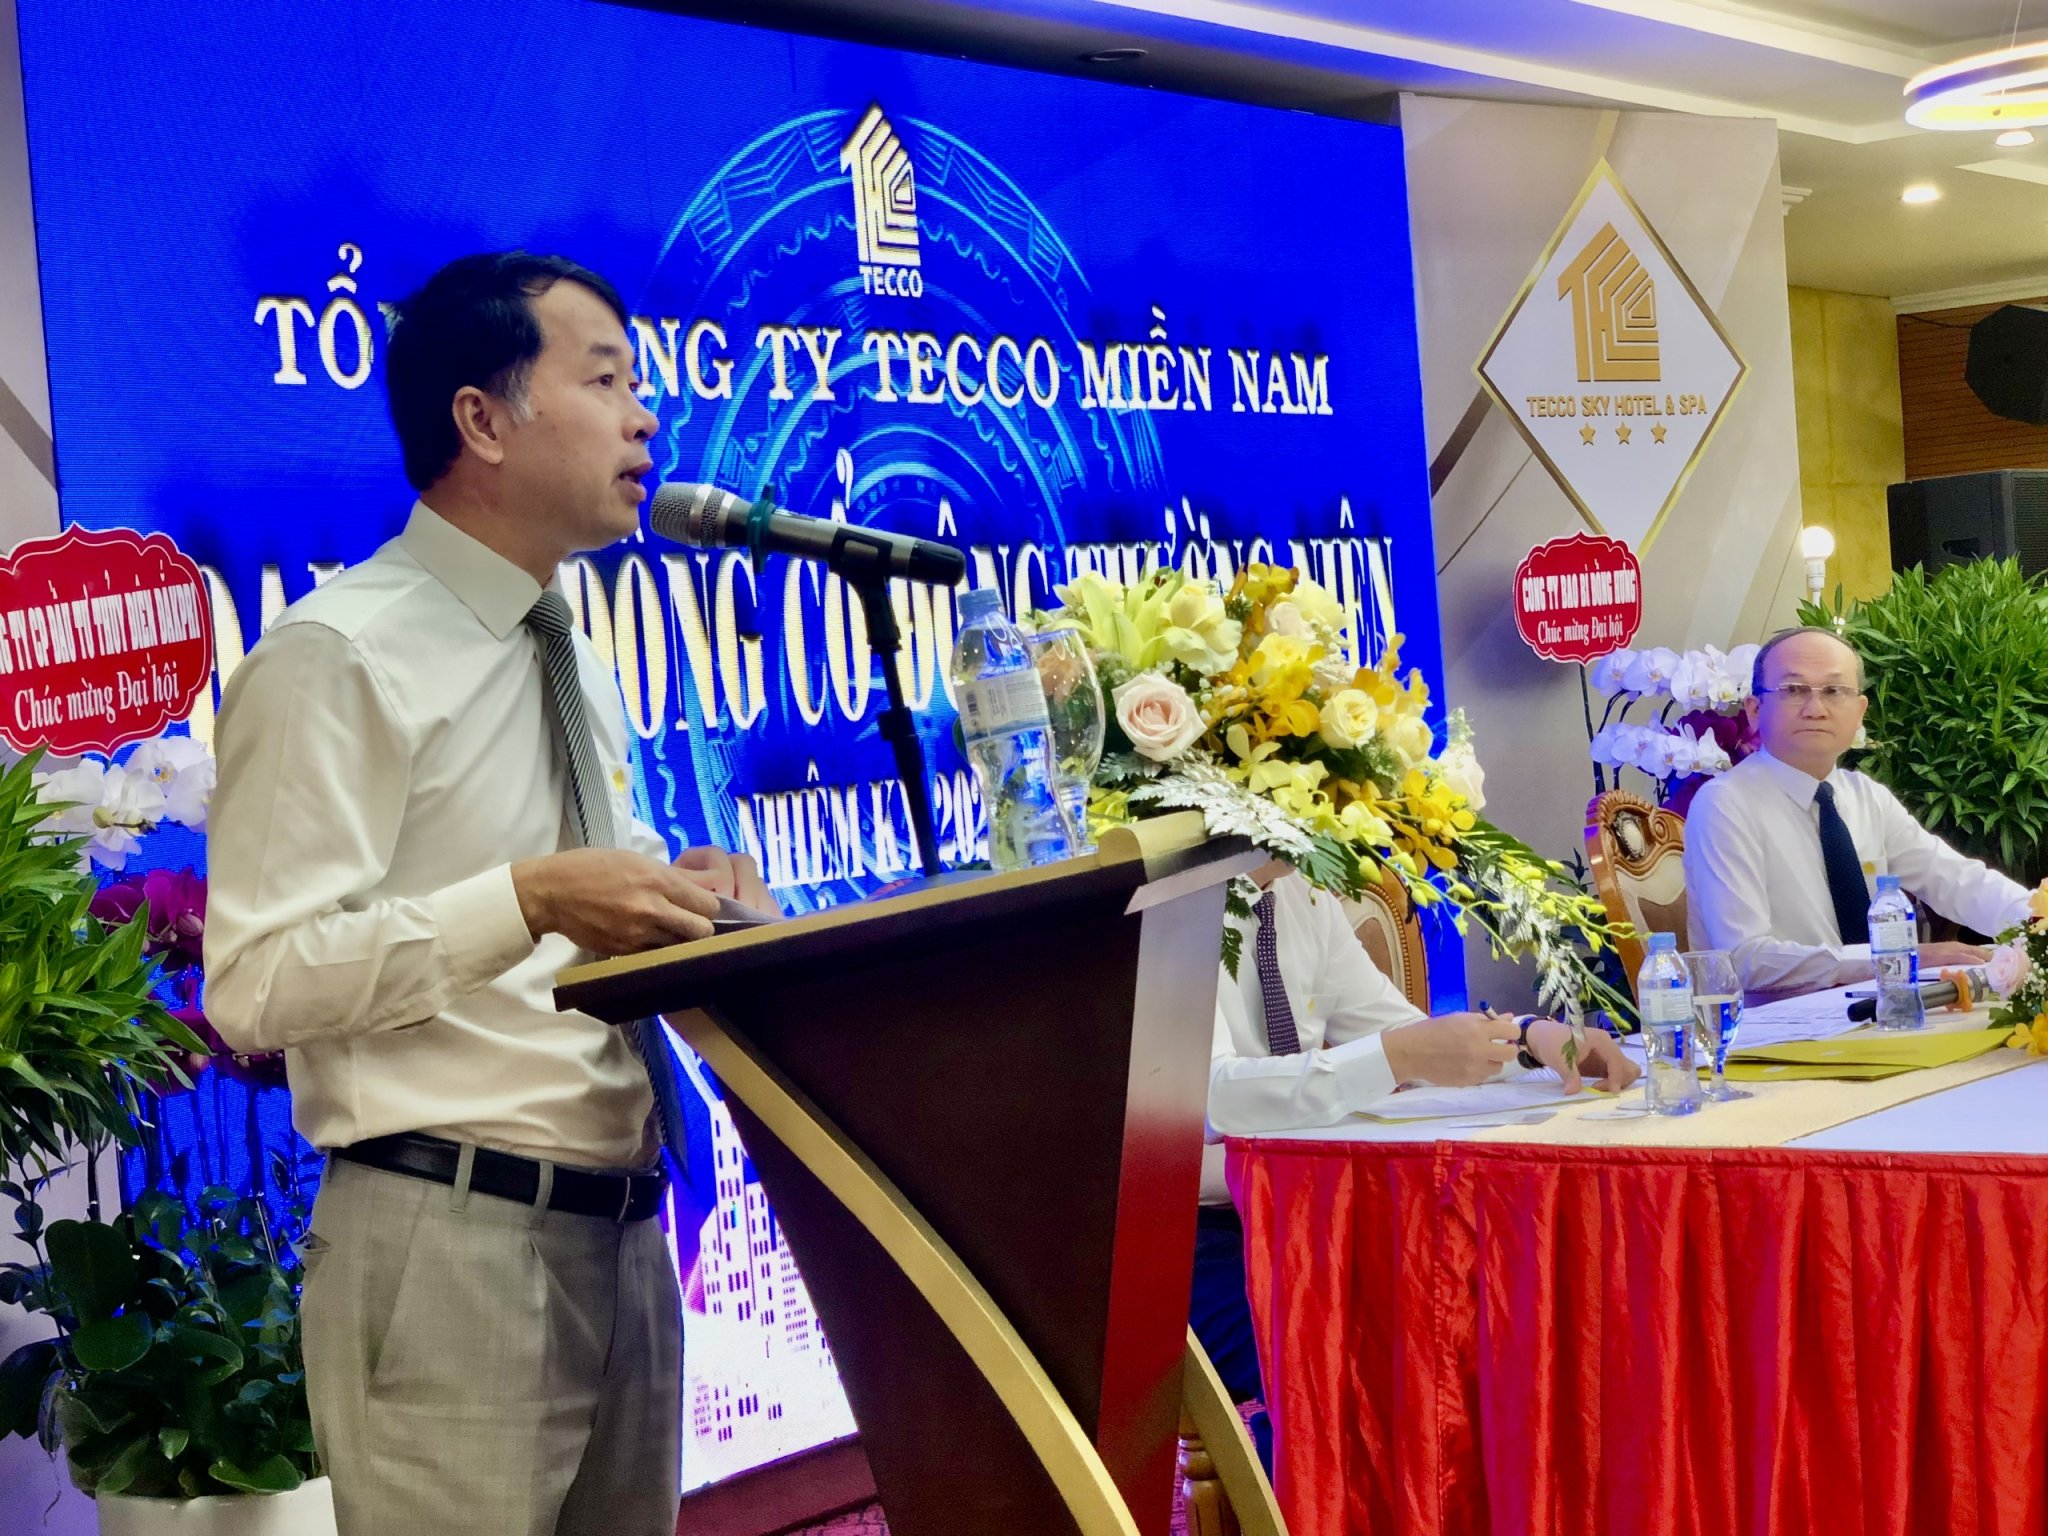 Ông Chu Tú Dương- Chủ tịch HĐQT kiêm Tổng Giám đốc Tổng Công ty Tecco Miền Nam